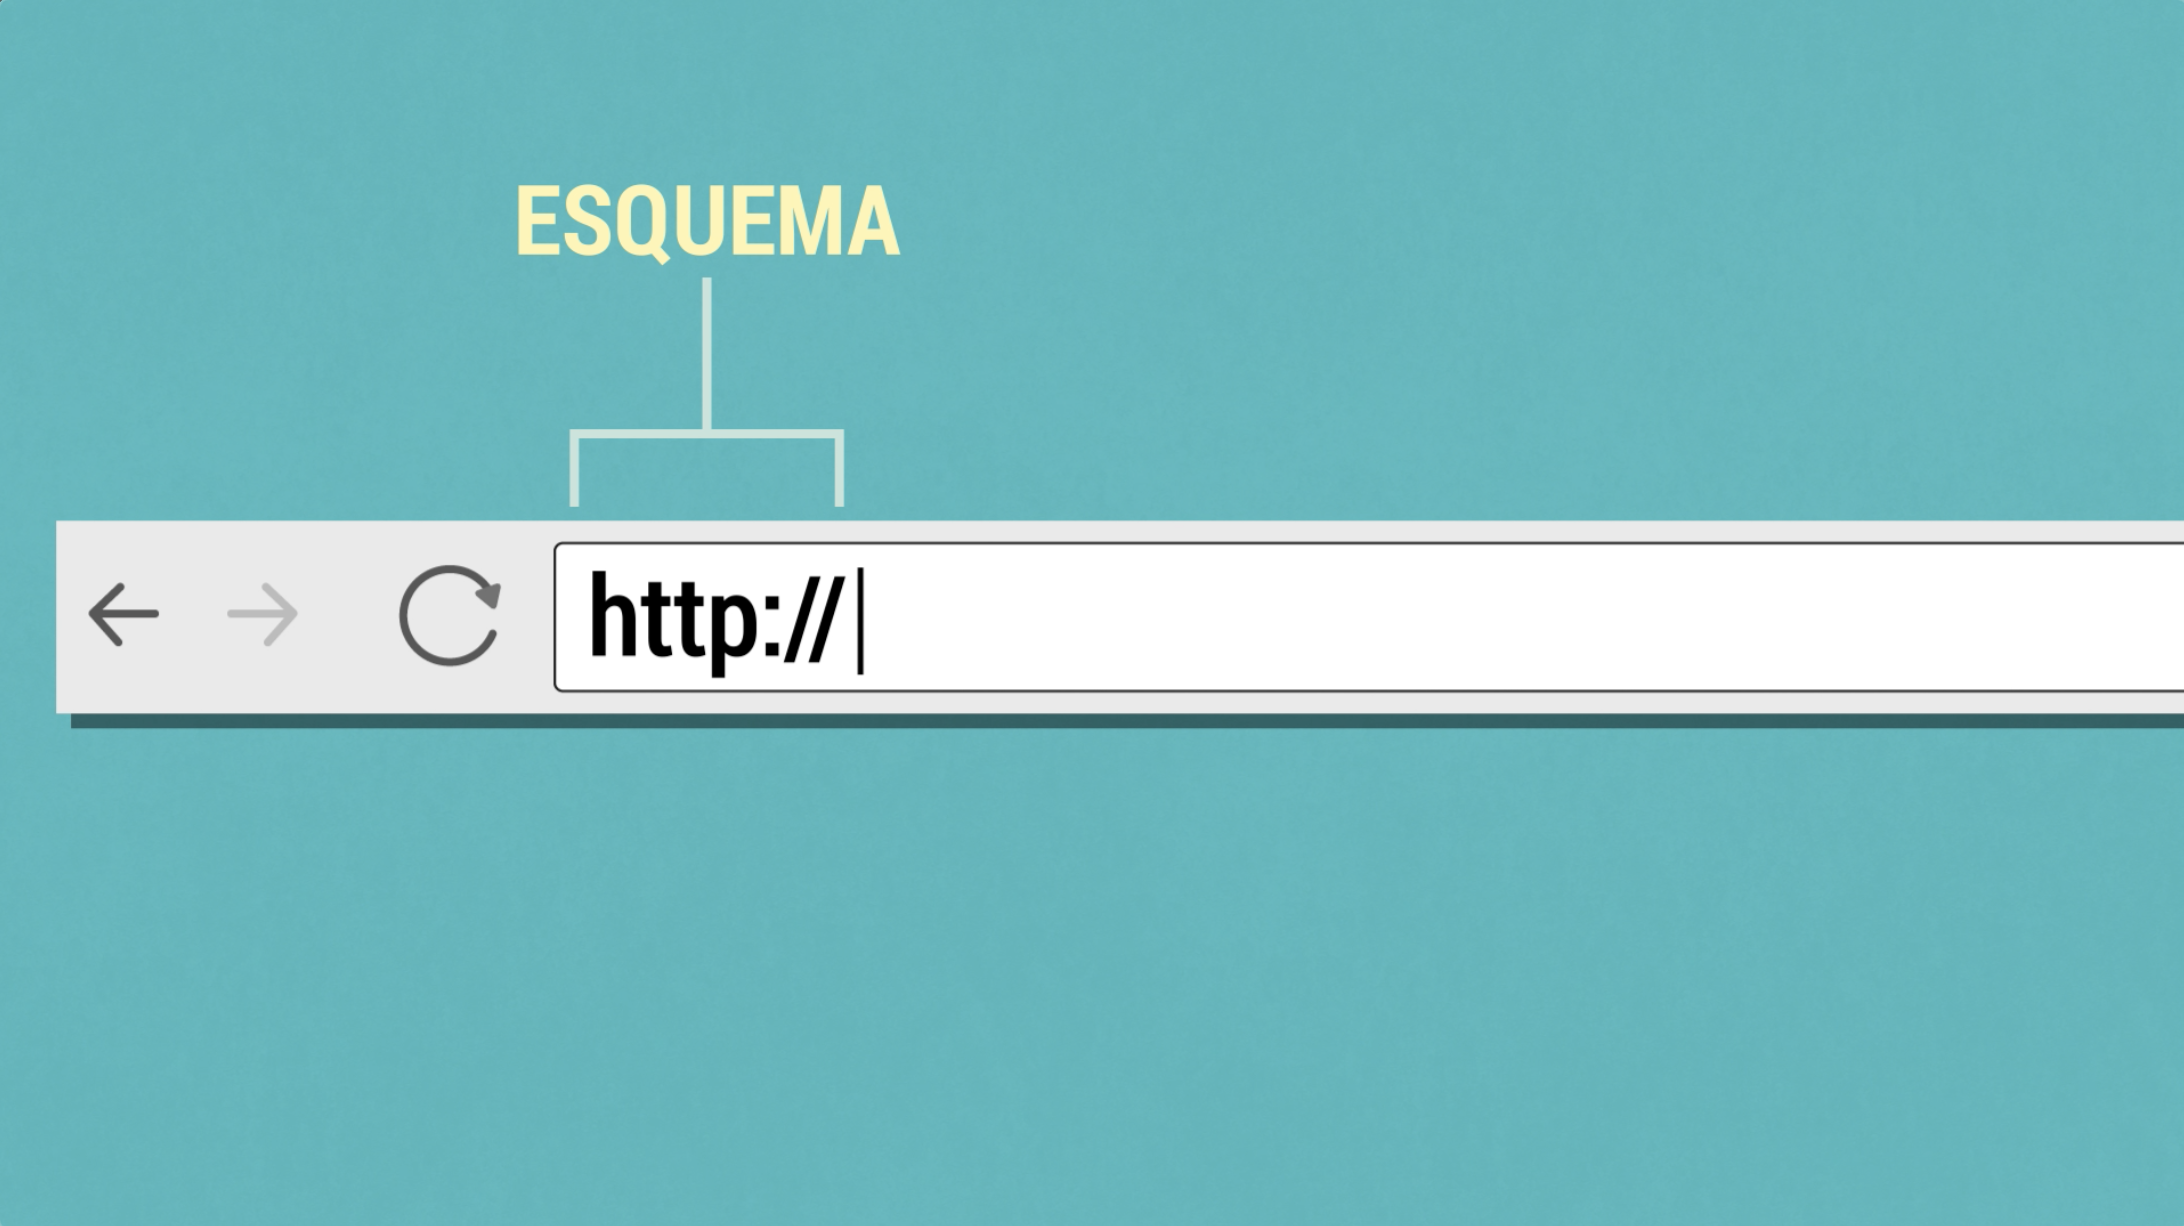 Imagen ejemplo del esquema de una URL.